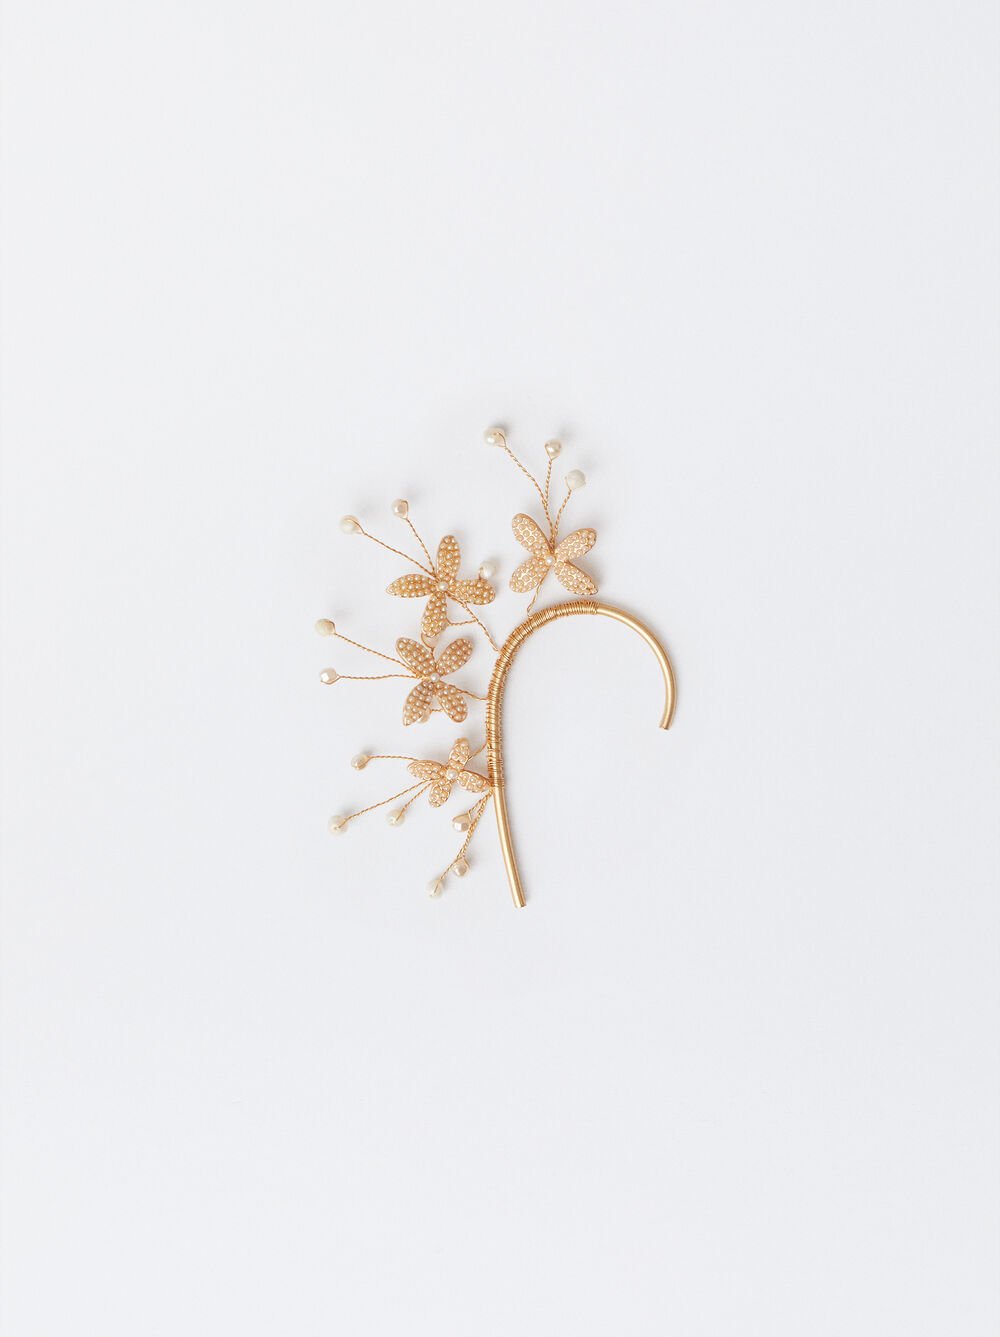 Ear Cuff-Ohrring Mit Blumen Und Perlen